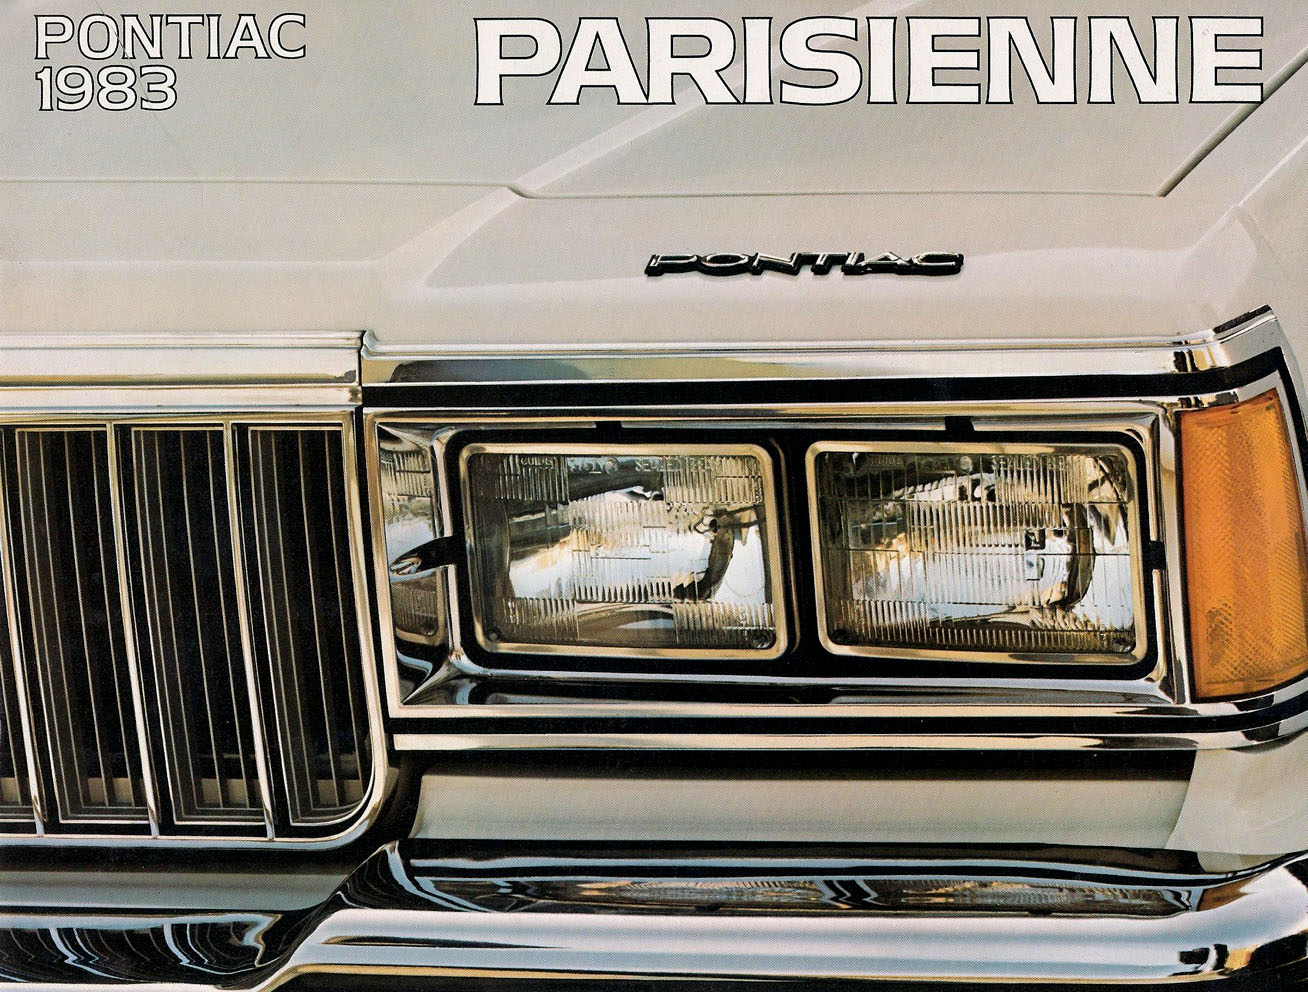 n_1983 Pontiac Parisienne (Cdn)-01.jpg